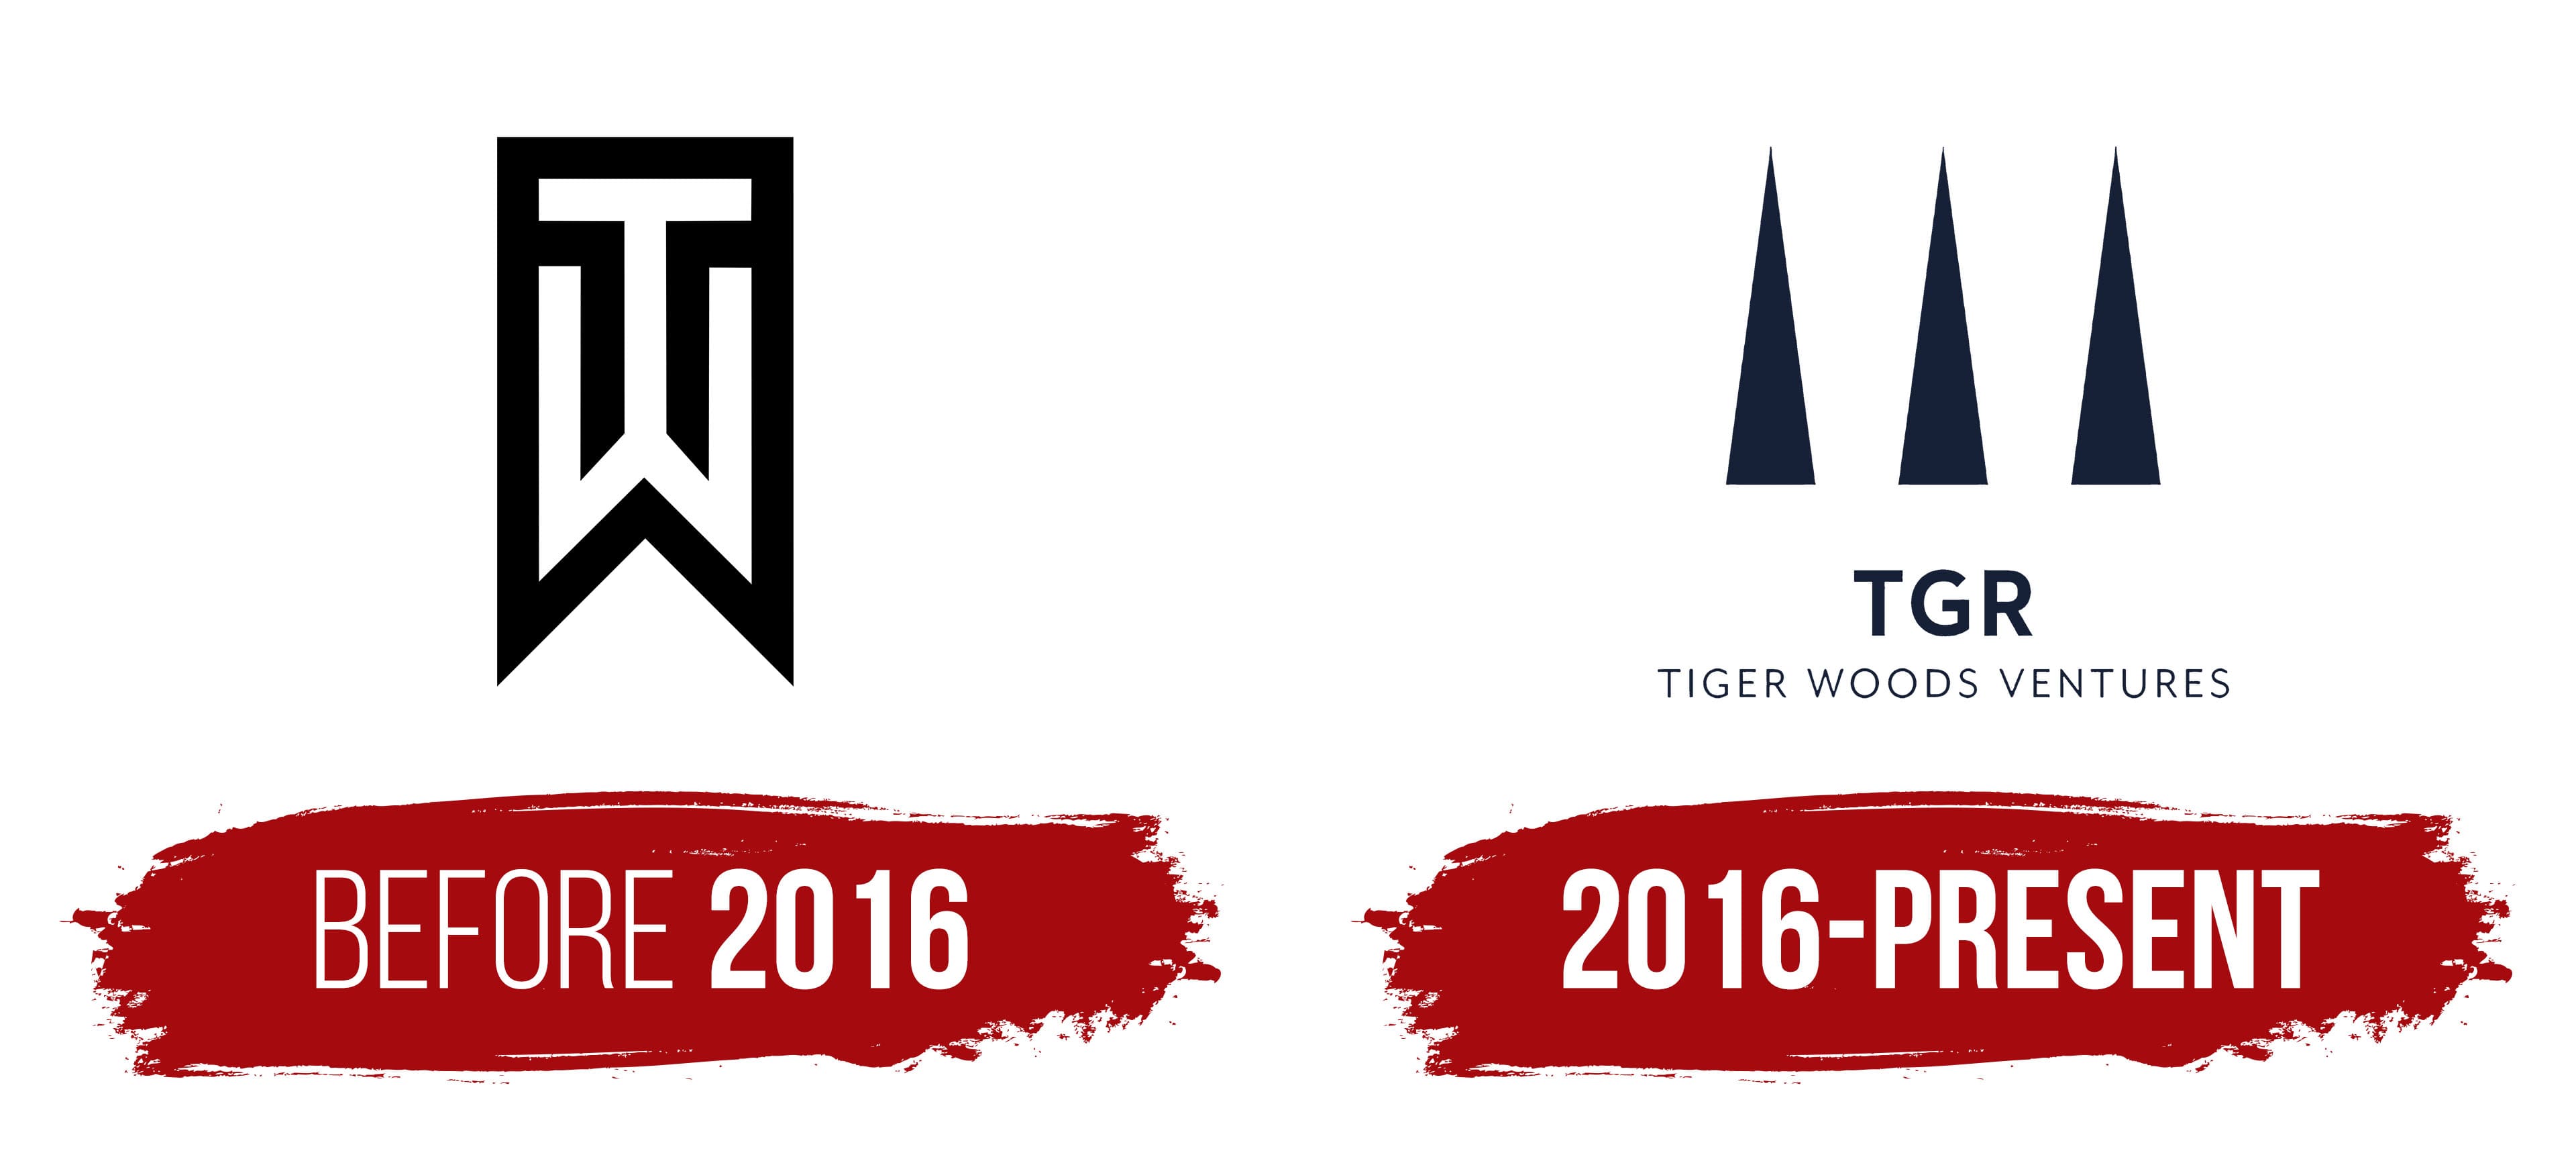 tiger woods logo design